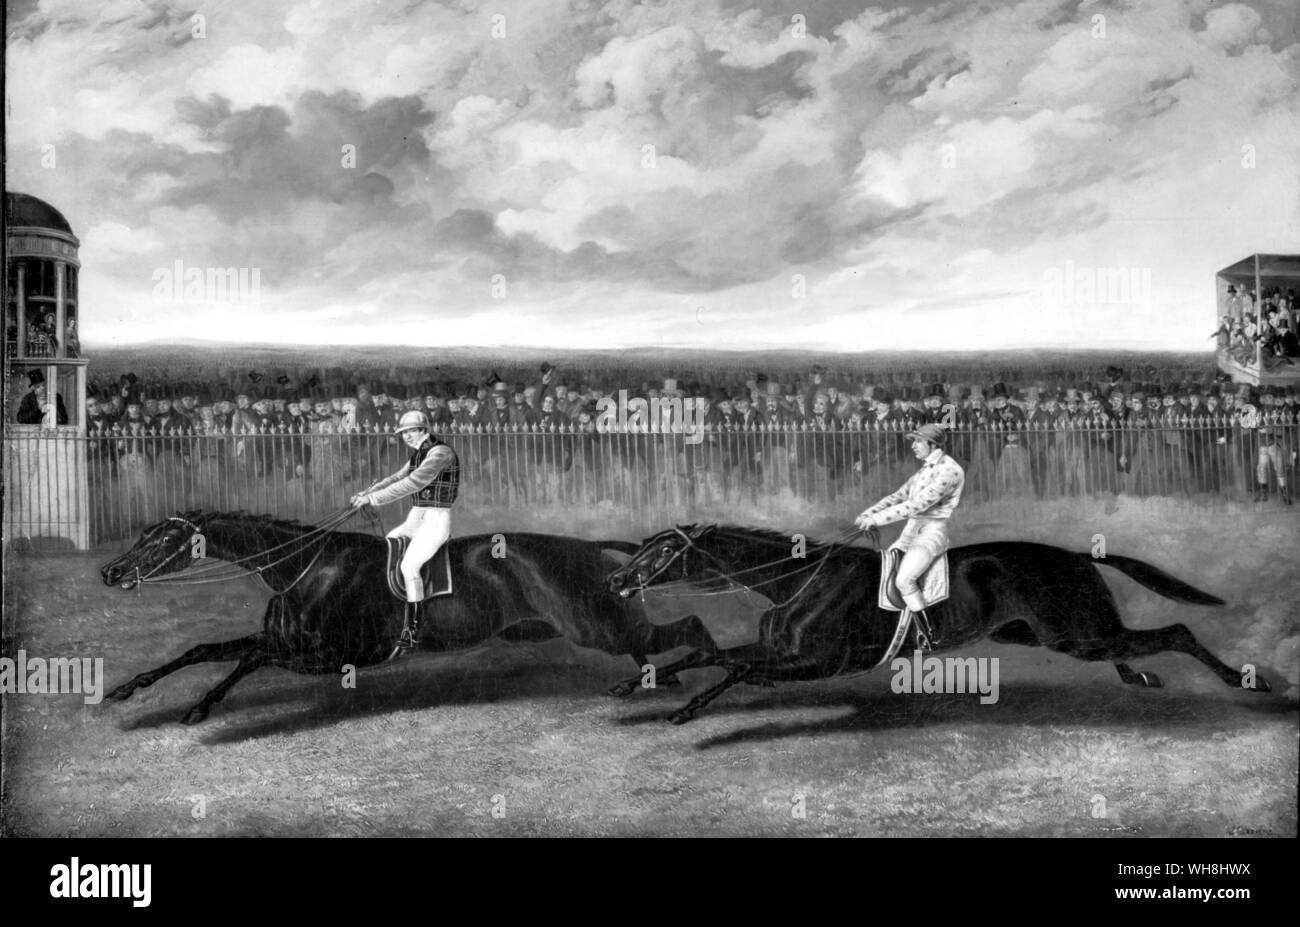 Flying Dutchman gewinnen von Voltigeur bei York 1851. Darley Arabian Vaterlinie: König Fergus Zweig. Der Fliegende Holländer war eine talentierte Pferd der höchsten Klasse. Diese Re-match, über zwei Meilen, am 13. Mai 1851 stattfand, wurde als Match des Jahrhunderts in Rechnung gestellt. Die Stände wurden mit Tausenden Zuschauern gepackt, und sie wurden zu einer herrlichen racing Spektakel behandelt. Voltigeur, acht und ein halbes Kilogramm weniger als sein Rivale und unter einem neuen Partner, Nat Flatman, alles läuft bis über hundert Yards von zu Hause aus bei den Fliegenden Holländer, im Rahmen einer nüchternen Charles Marlow, neben reichten Stockfoto